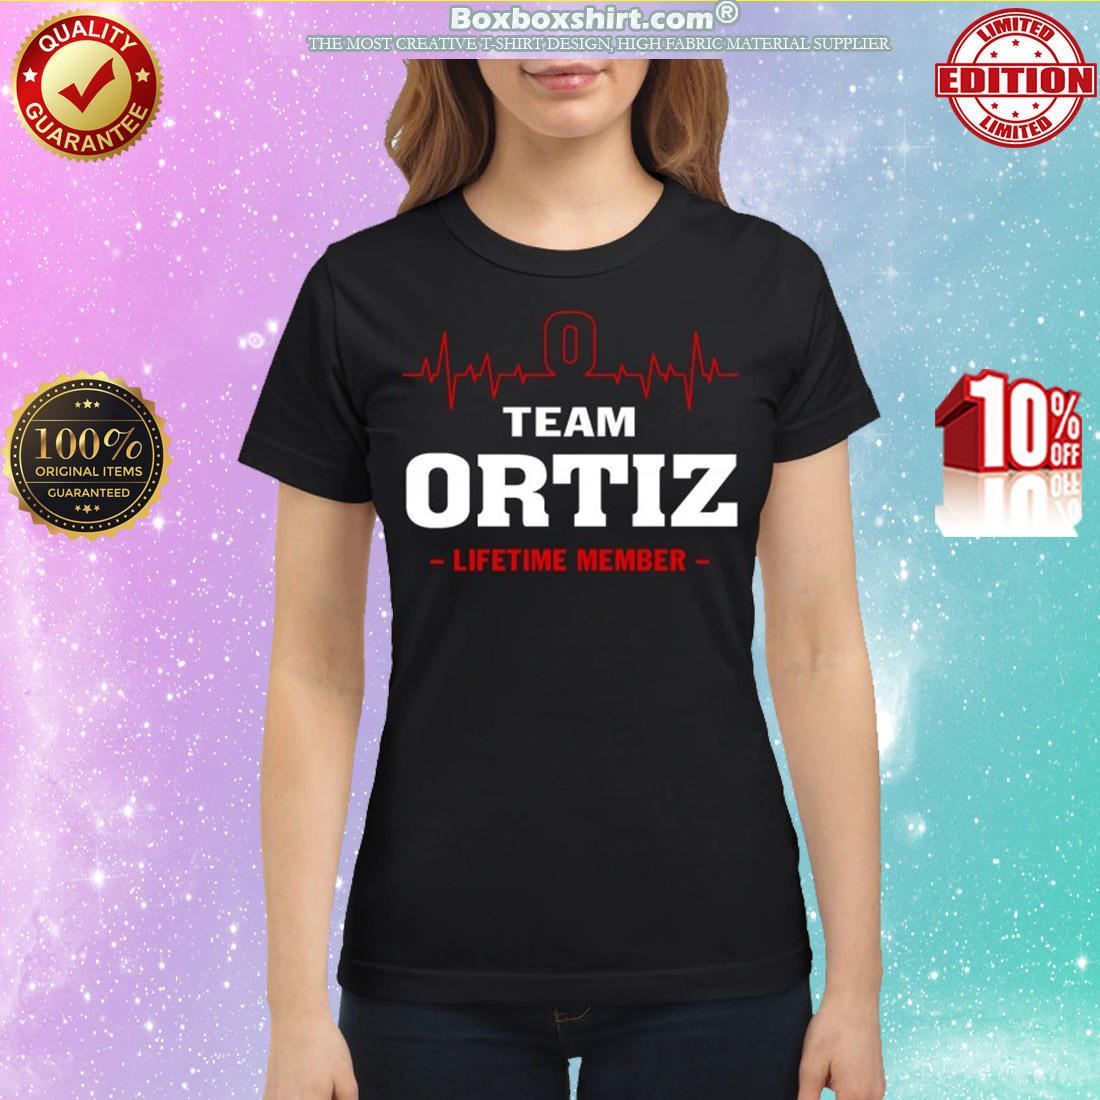 Team Ortiz lifetime member classic shirt